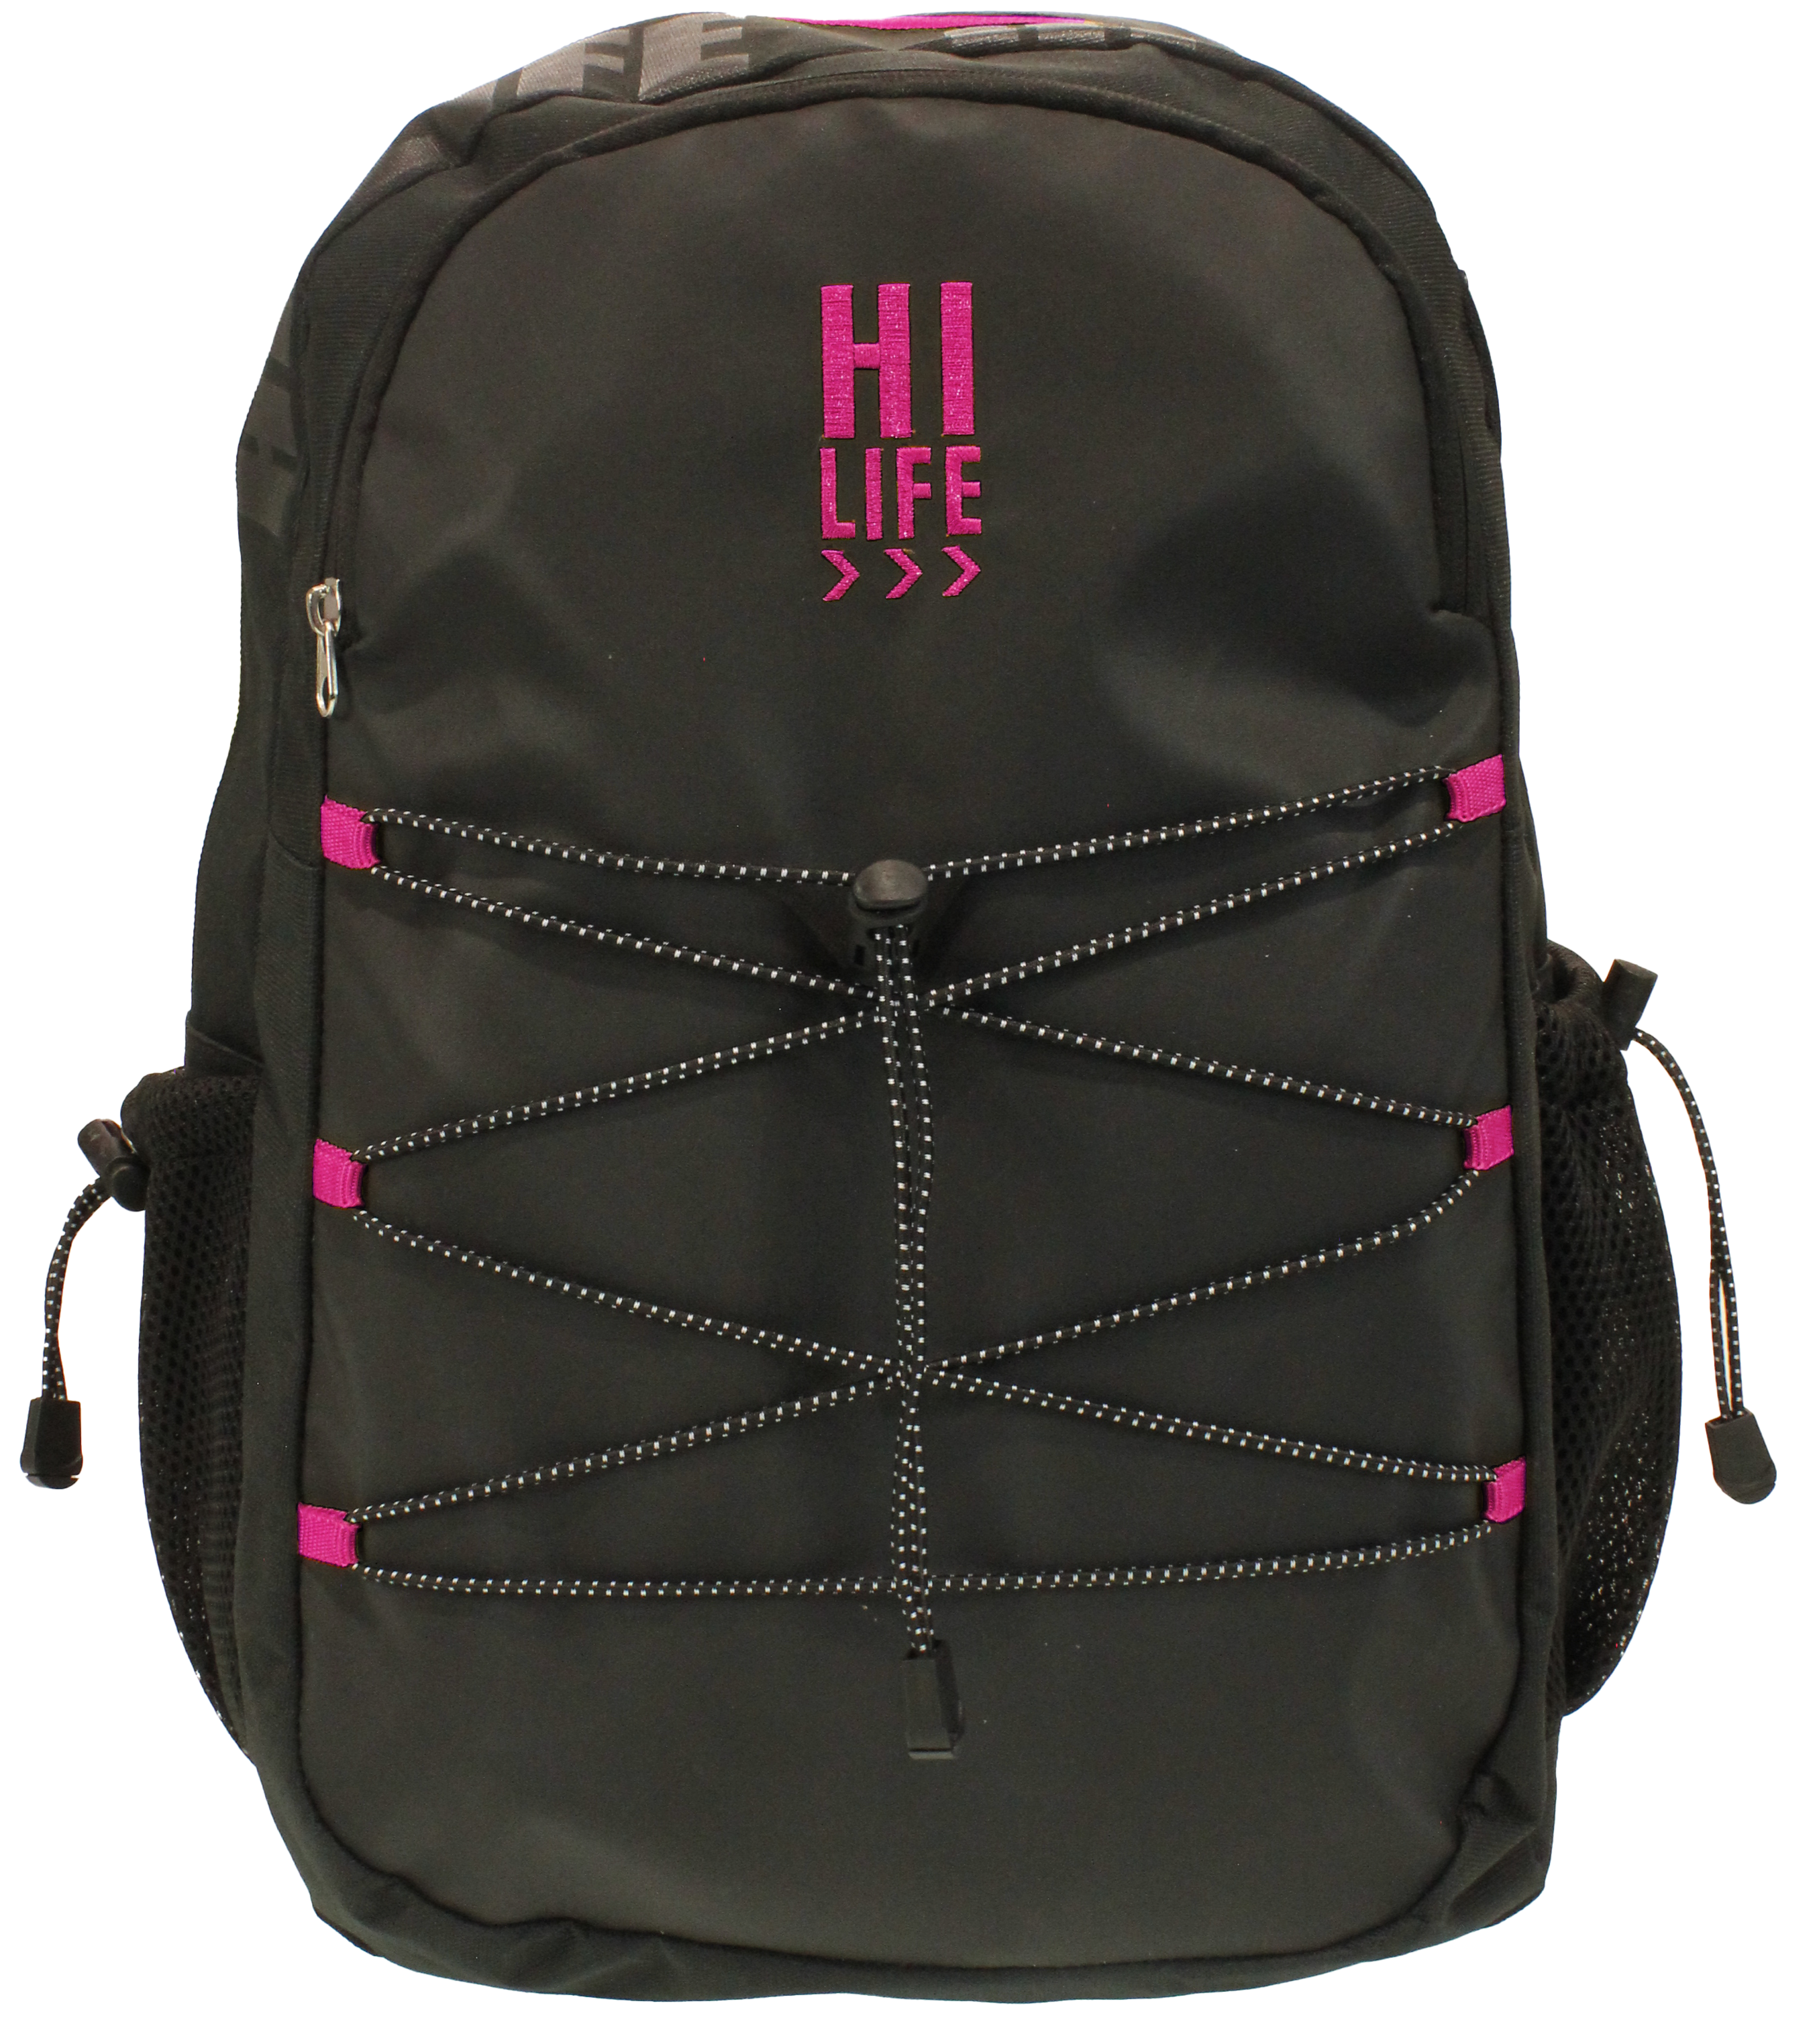 Hi-Life Student Backpack Black/Pink